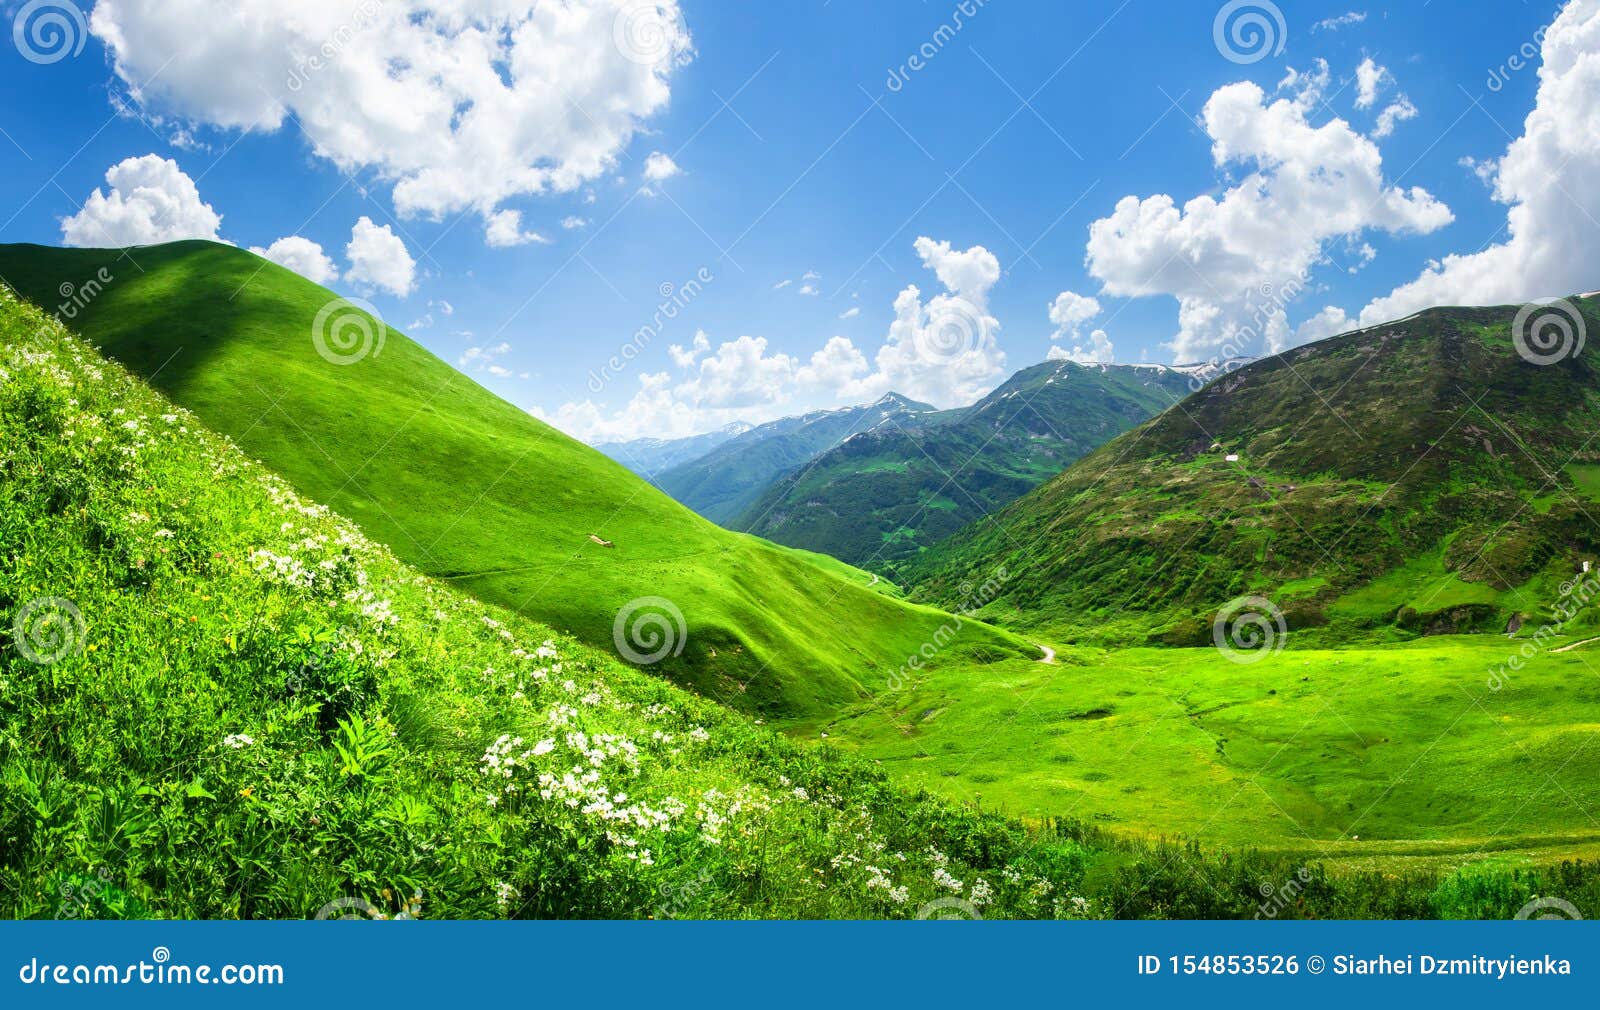 象草的山谷在svaneti 乔治亚风景青山在阳光下在夏天山的美丽的景色与在蓝色的云彩库存照片 图片包括有